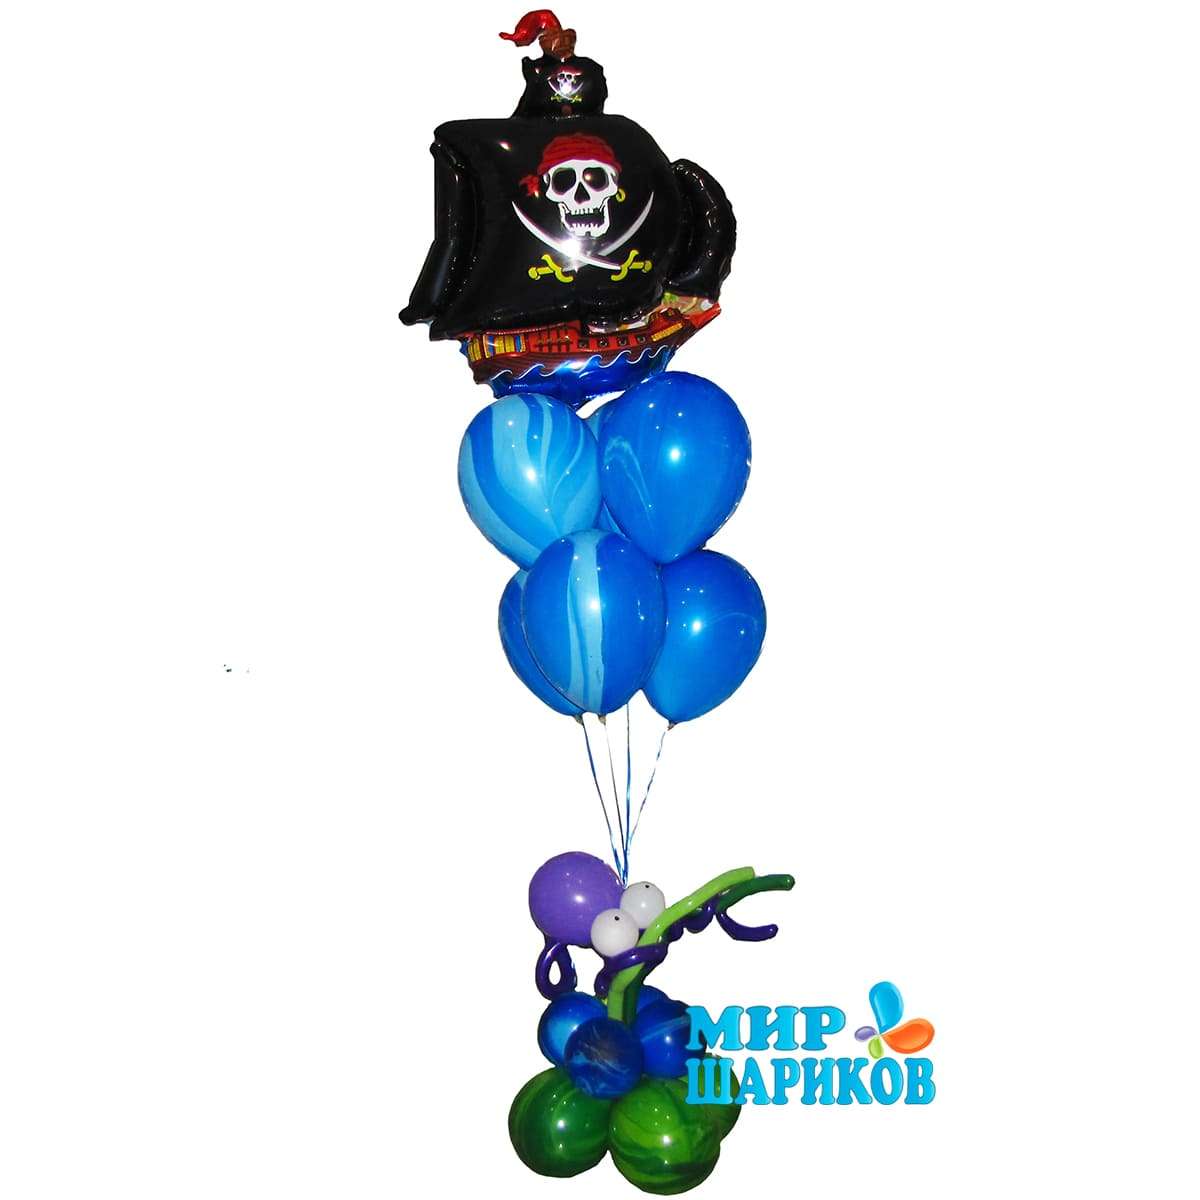 Черный пиратский корабль, осьминог и шарики в морской расцветке картинка